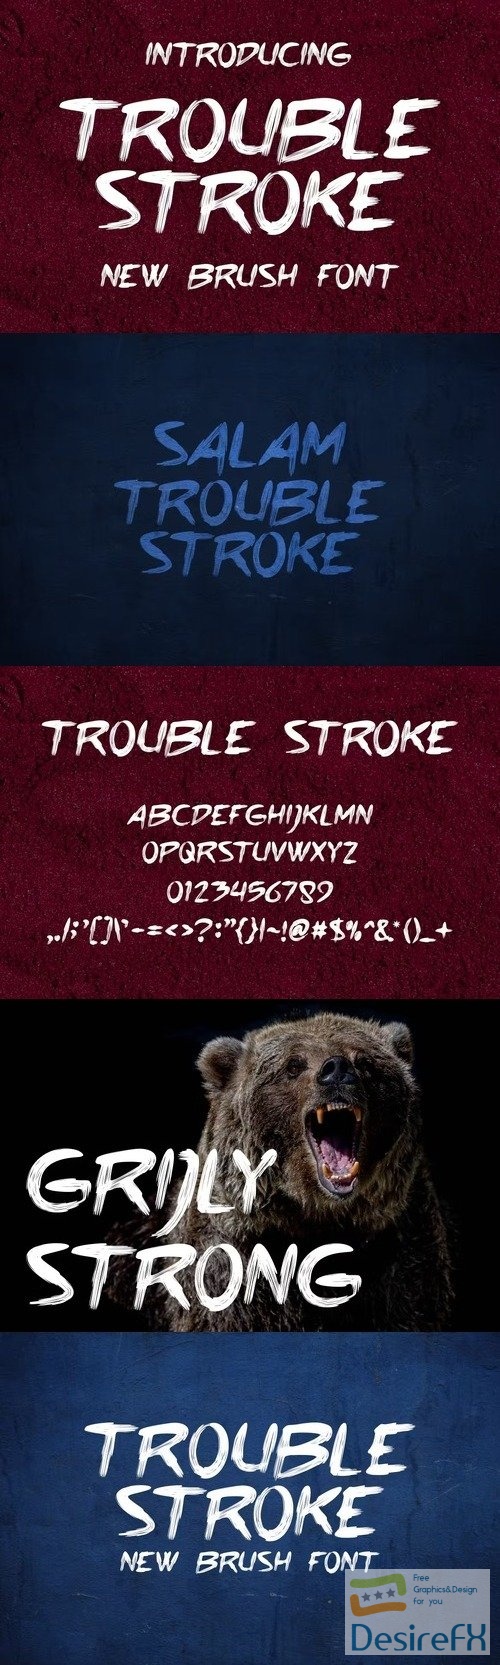 Trouble Stroke Fonts